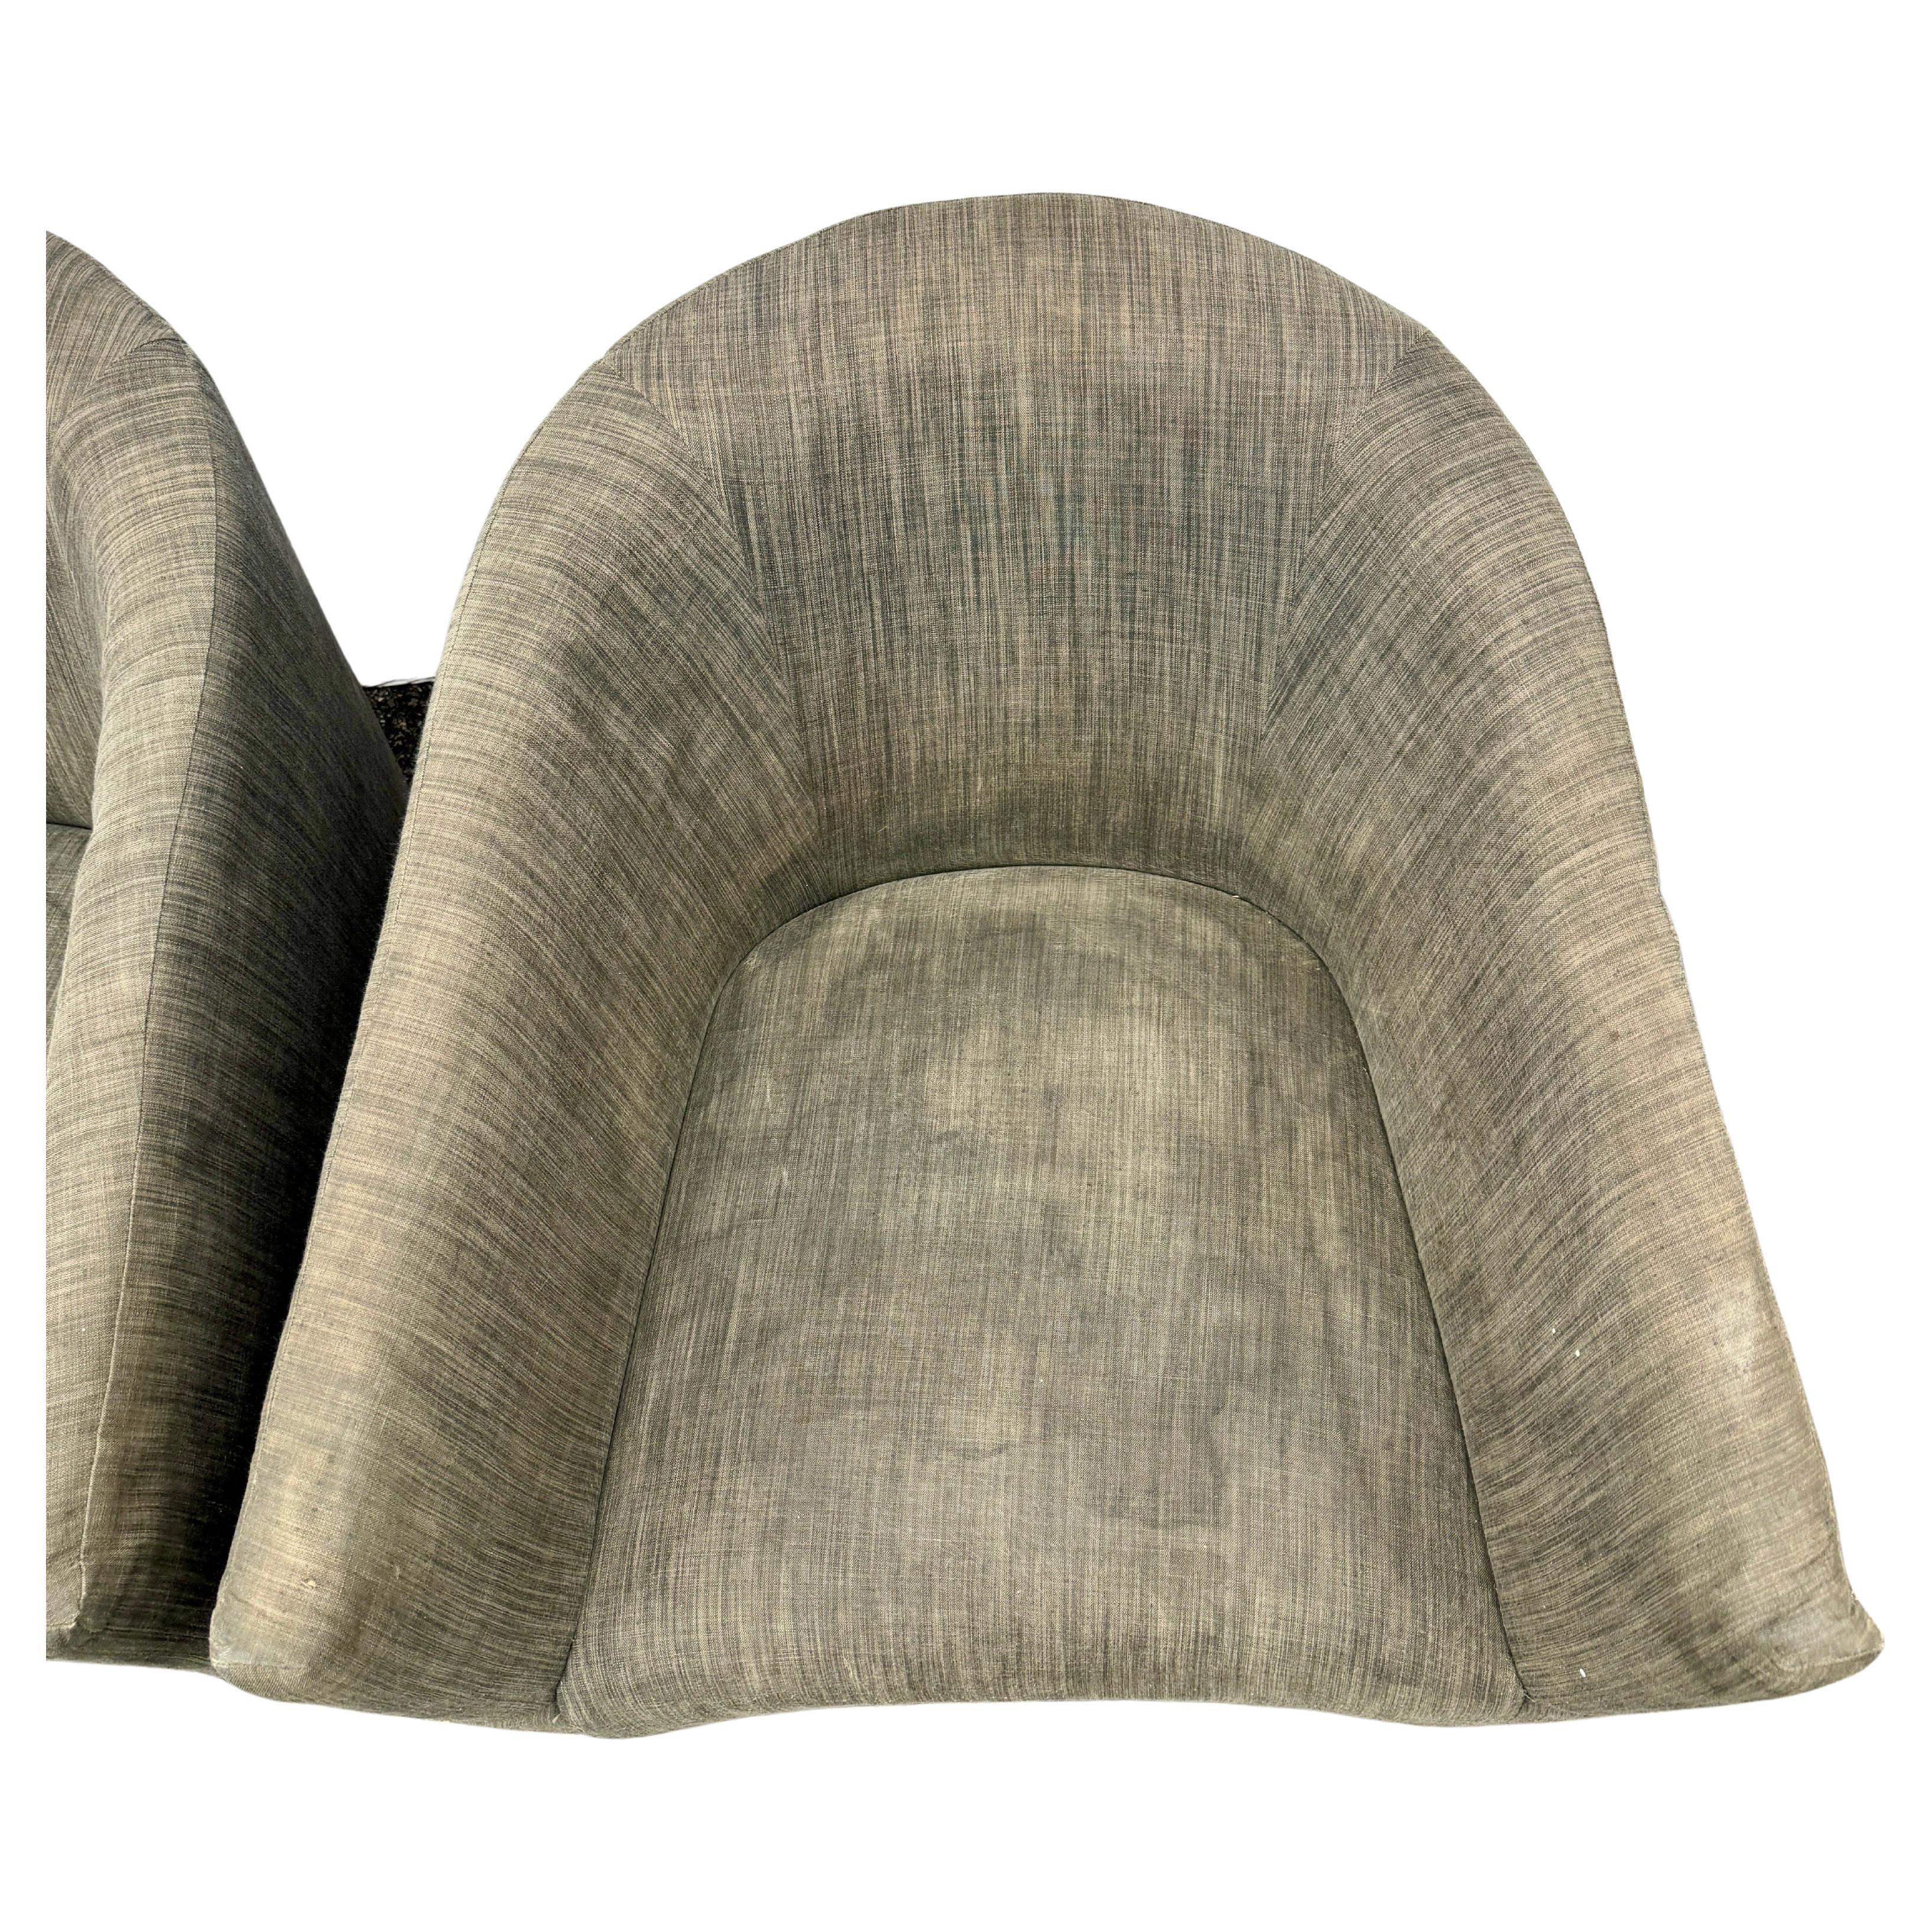 Diese Vintage Paar Mid-Century Stühle haben große hat wunderbare einfache klassische Linien. Sie sind ein sehr solides Paar mit einem stabilen Sockel und haben ihre ursprüngliche Polsterung. Der Stoff auf diesen Stühlen hat eine große Mid-Century